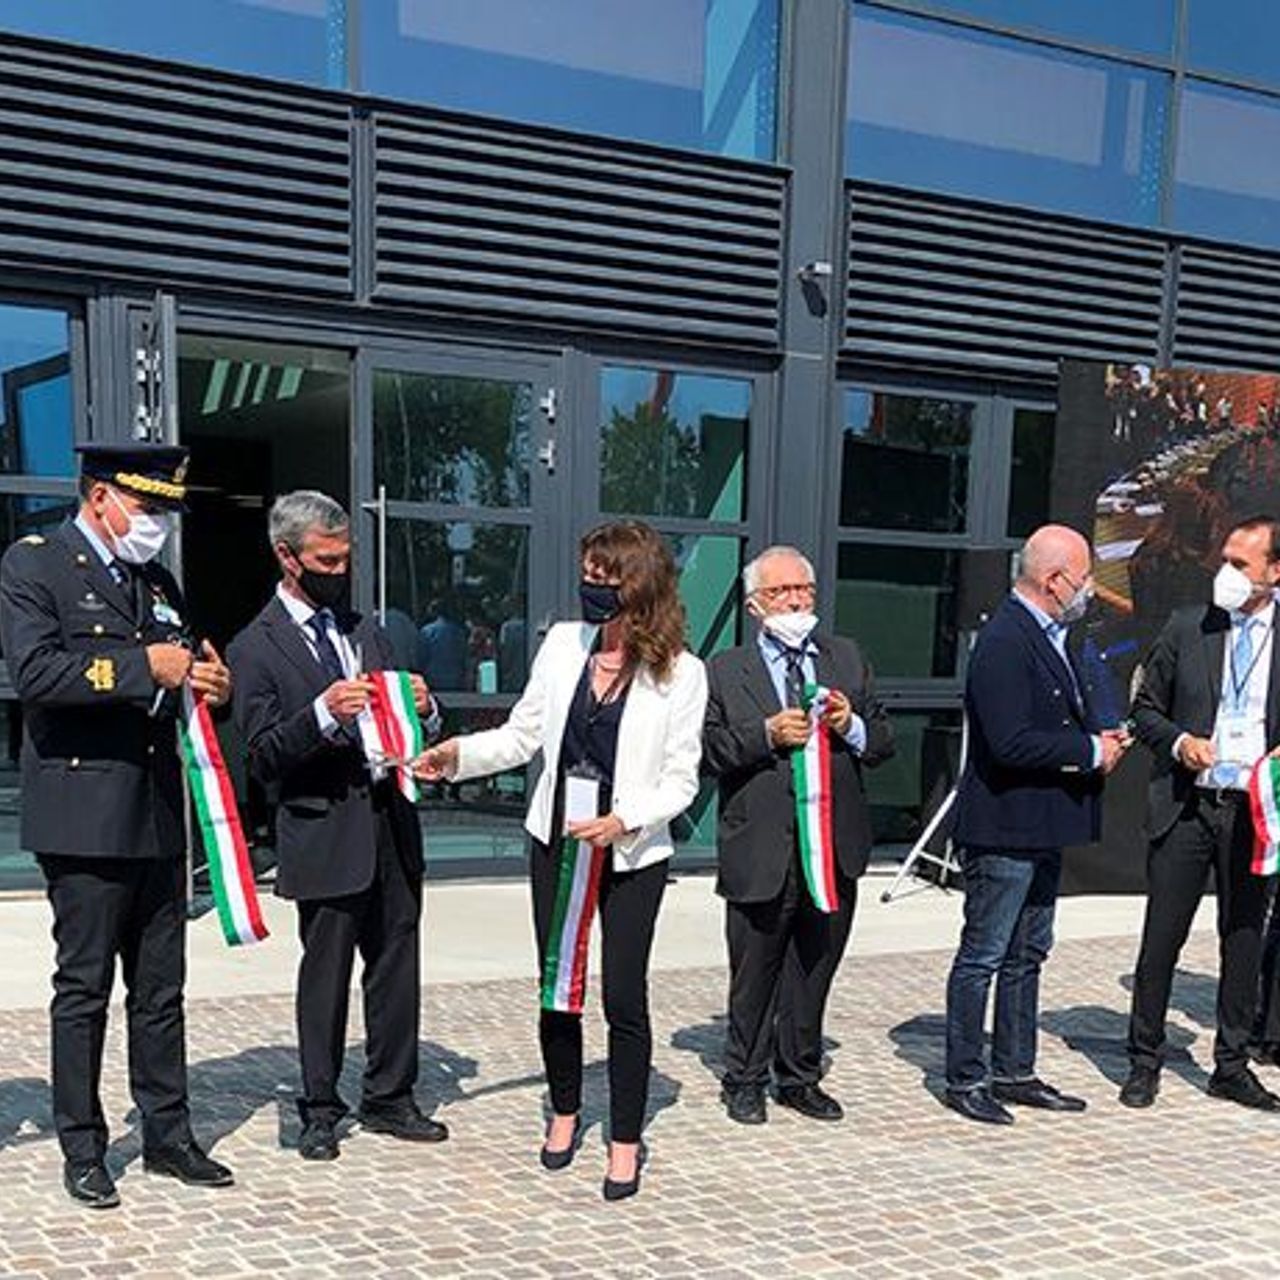 Otvoritvena slovesnost bolonjske pisarne ECWMF, Evropskega centra za srednjeročne vremenske napovedi (foto Giacomo Maestri)